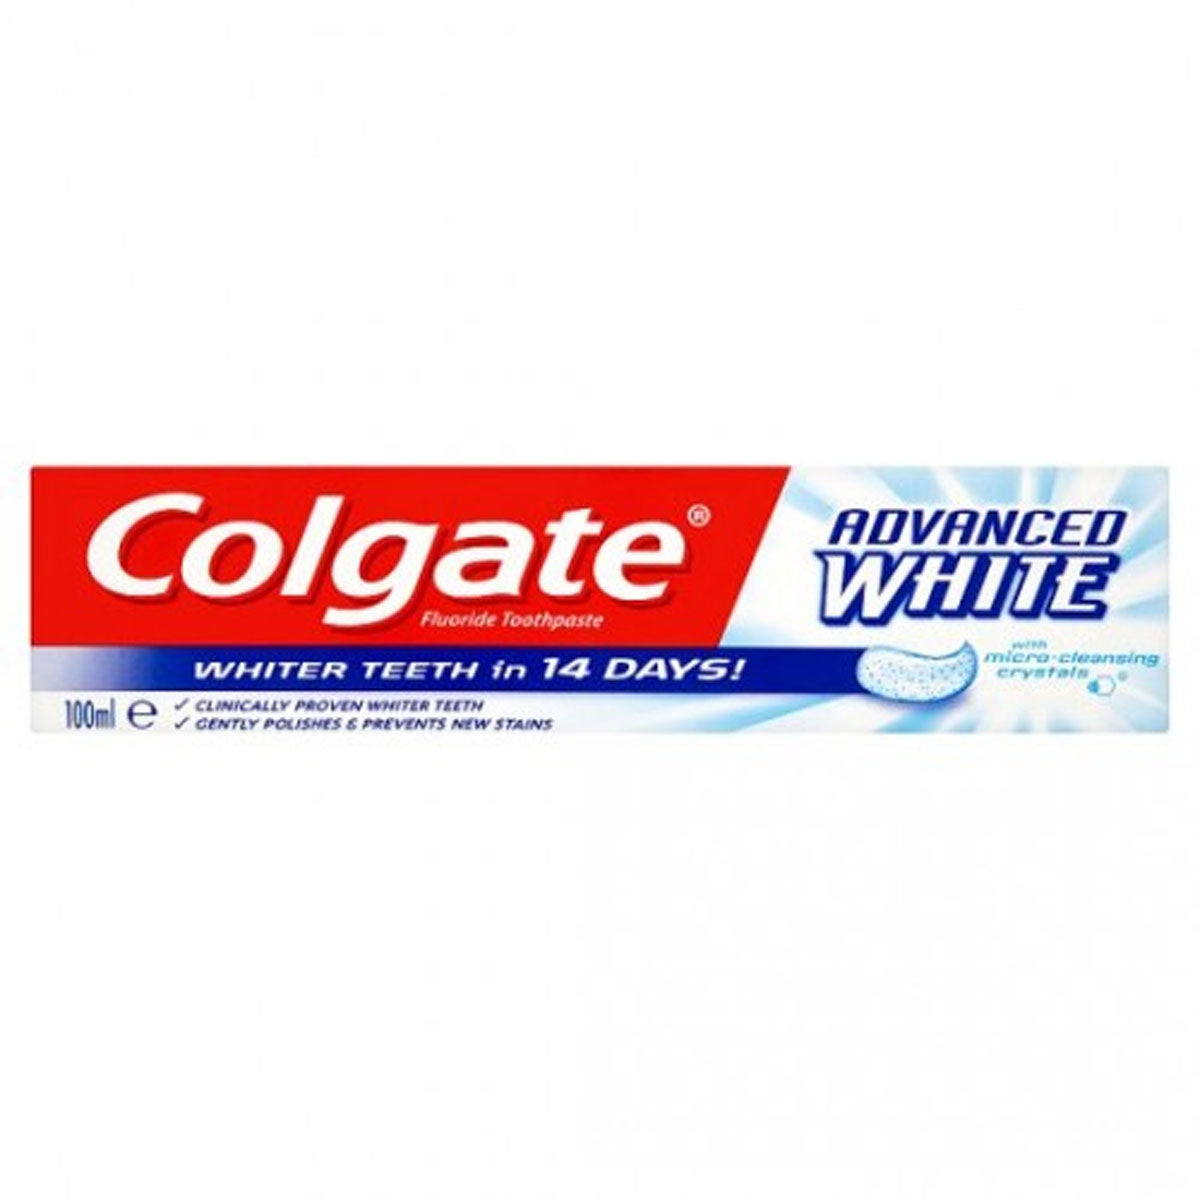 Colgate - Advanced White Toothpaste - 100ml.